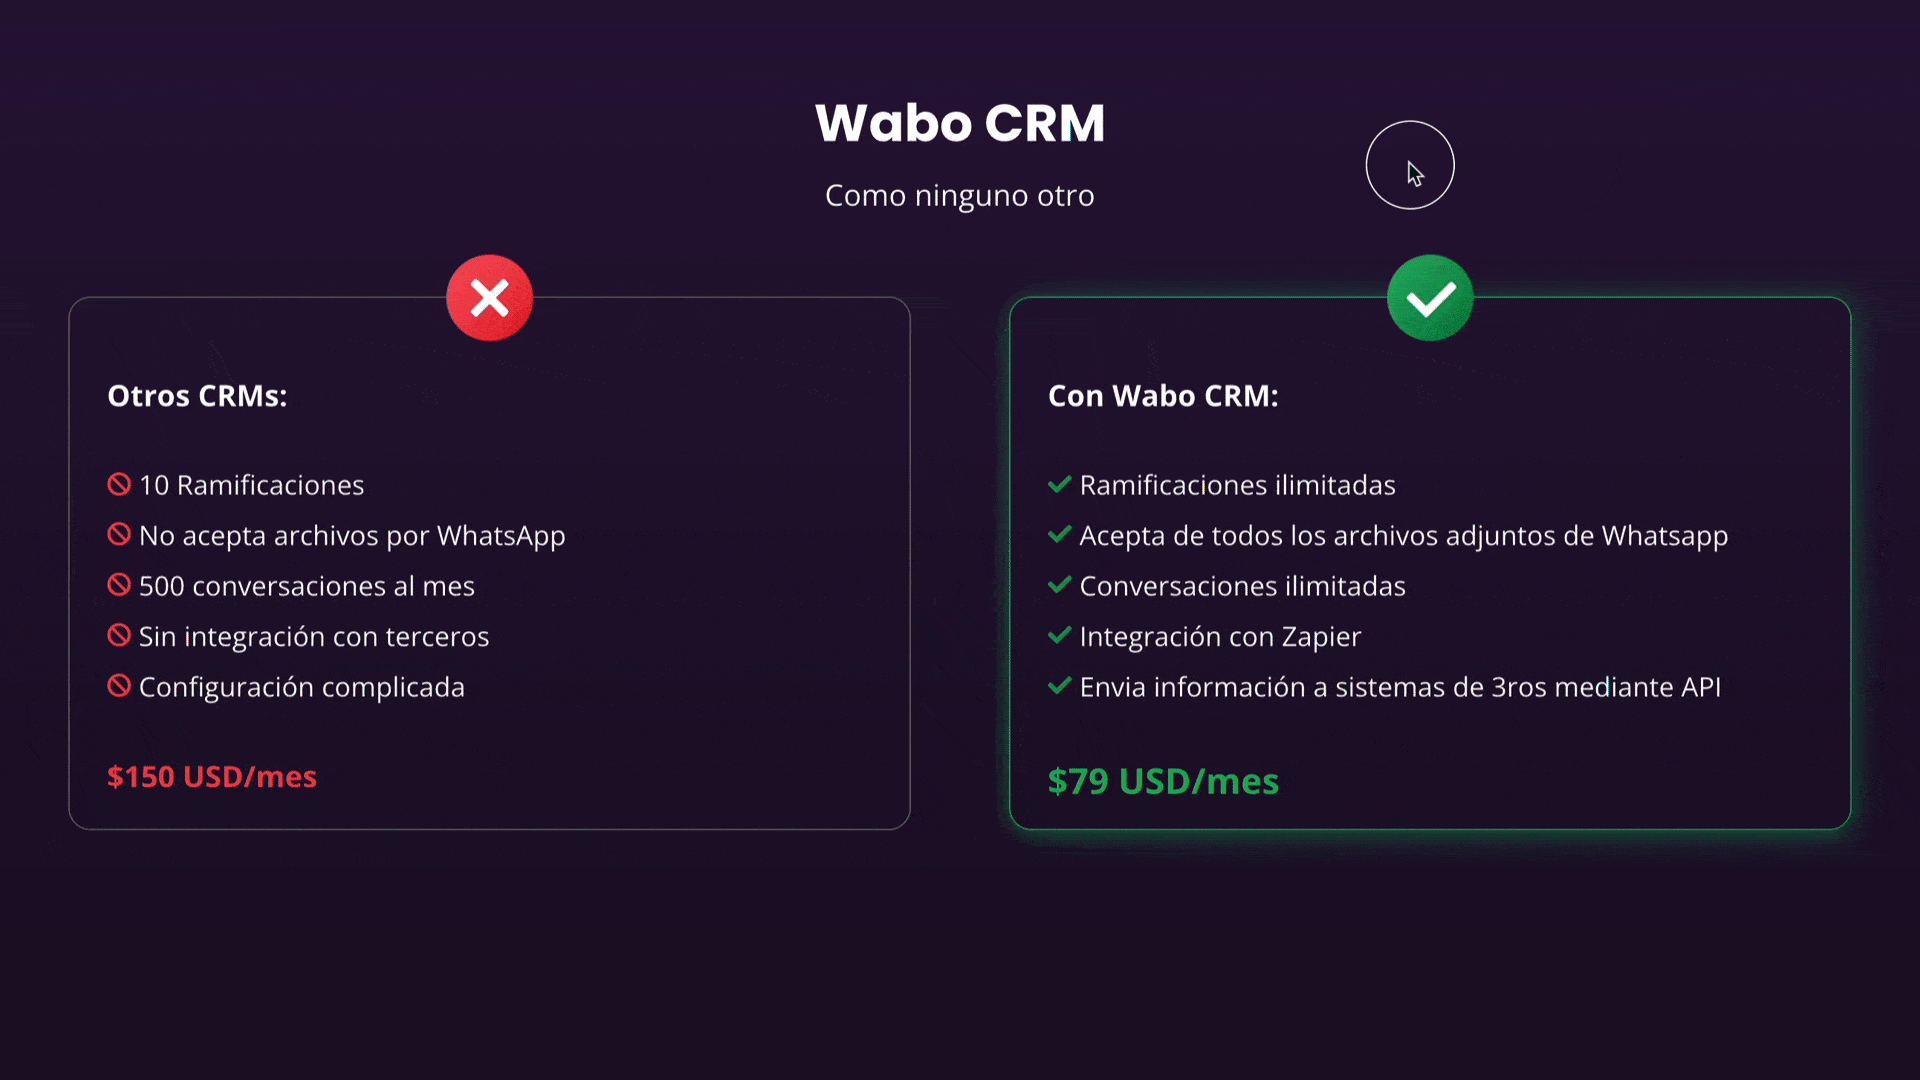 Captura de pantalla de la sección de precios de Wabo CRM